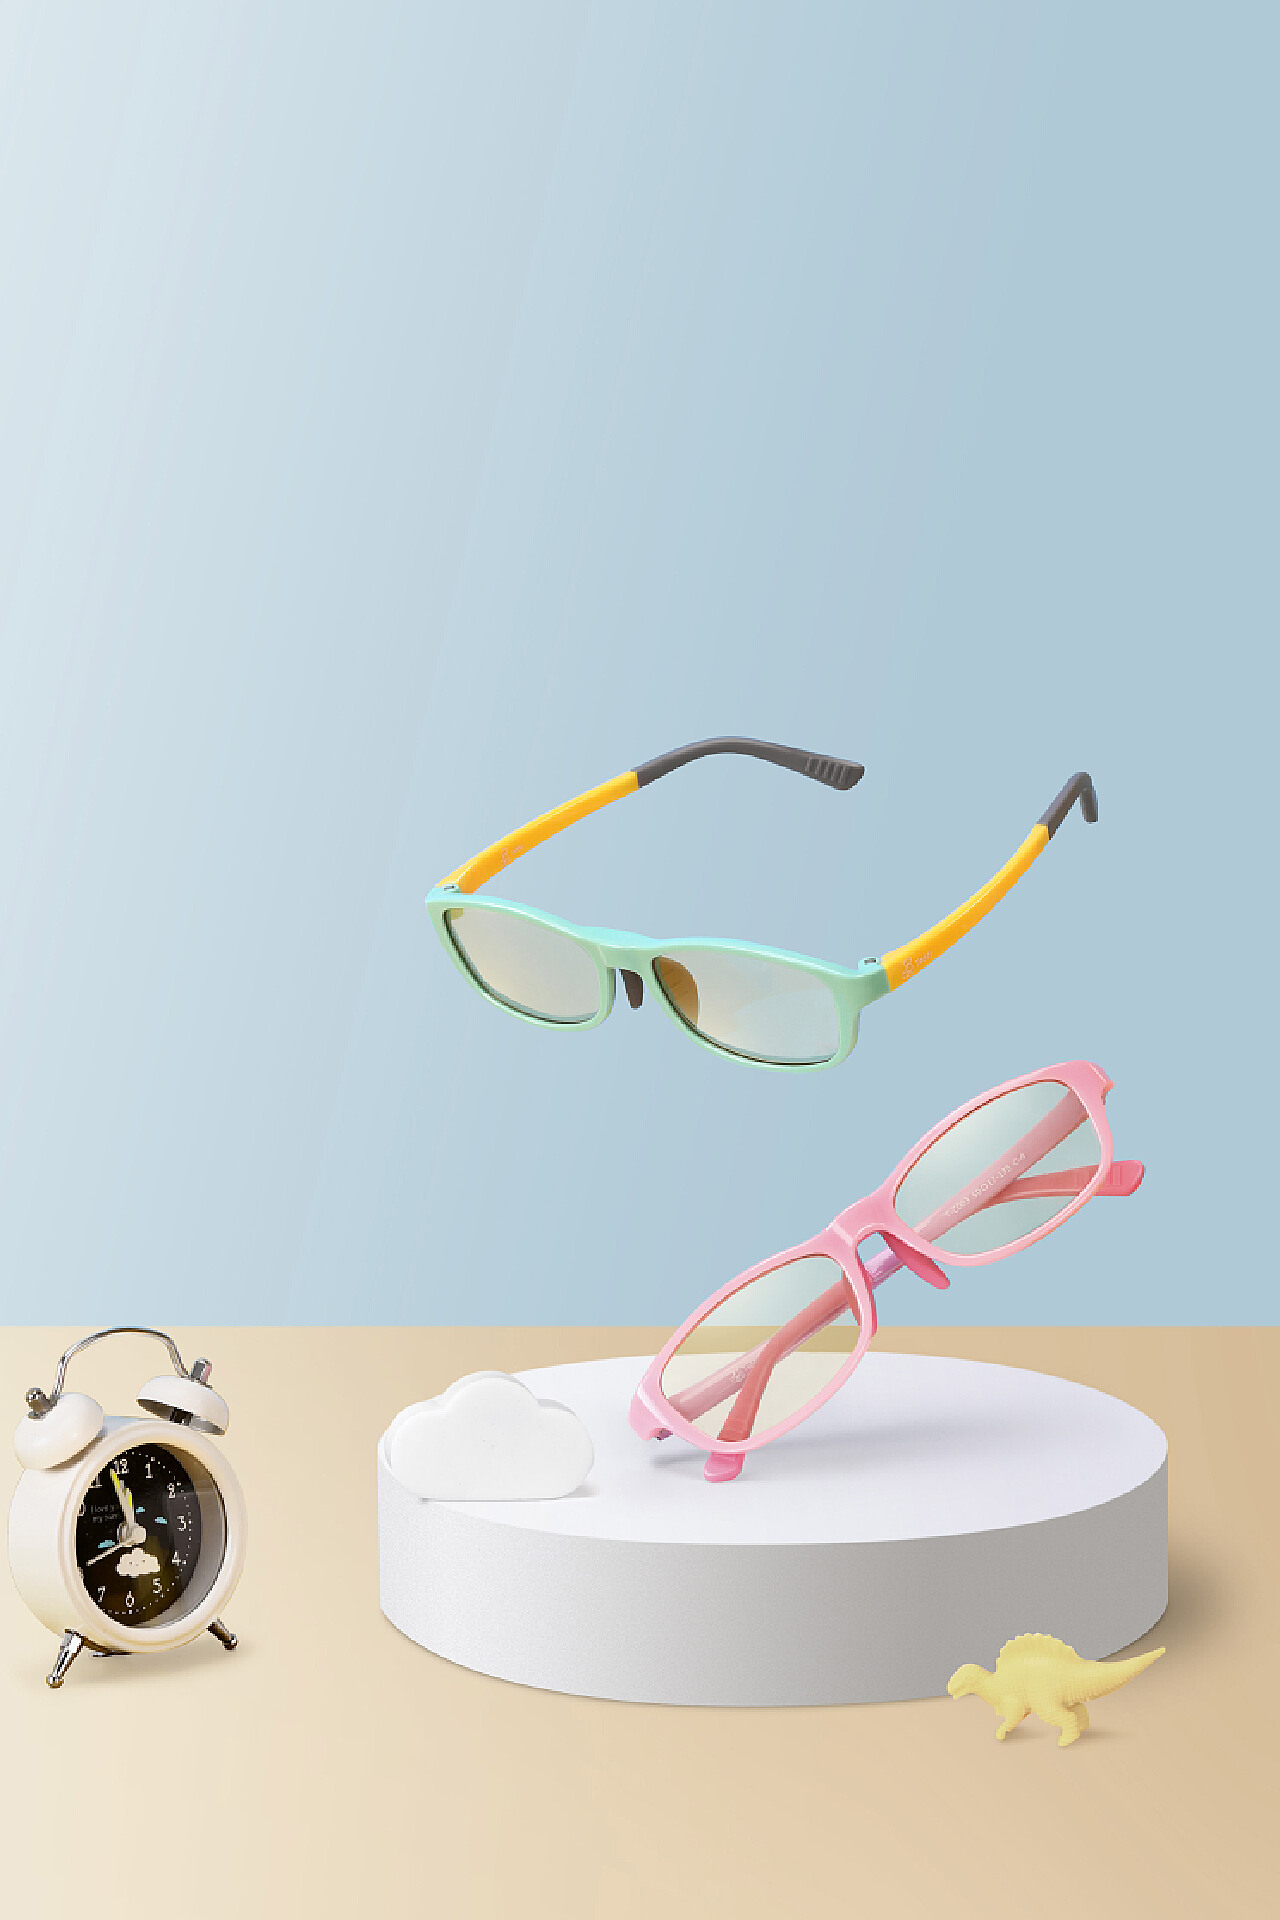 卡通闪光眼镜框 七彩LED闪光眼镜 儿童发光玩具 舞会装扮道具-阿里巴巴